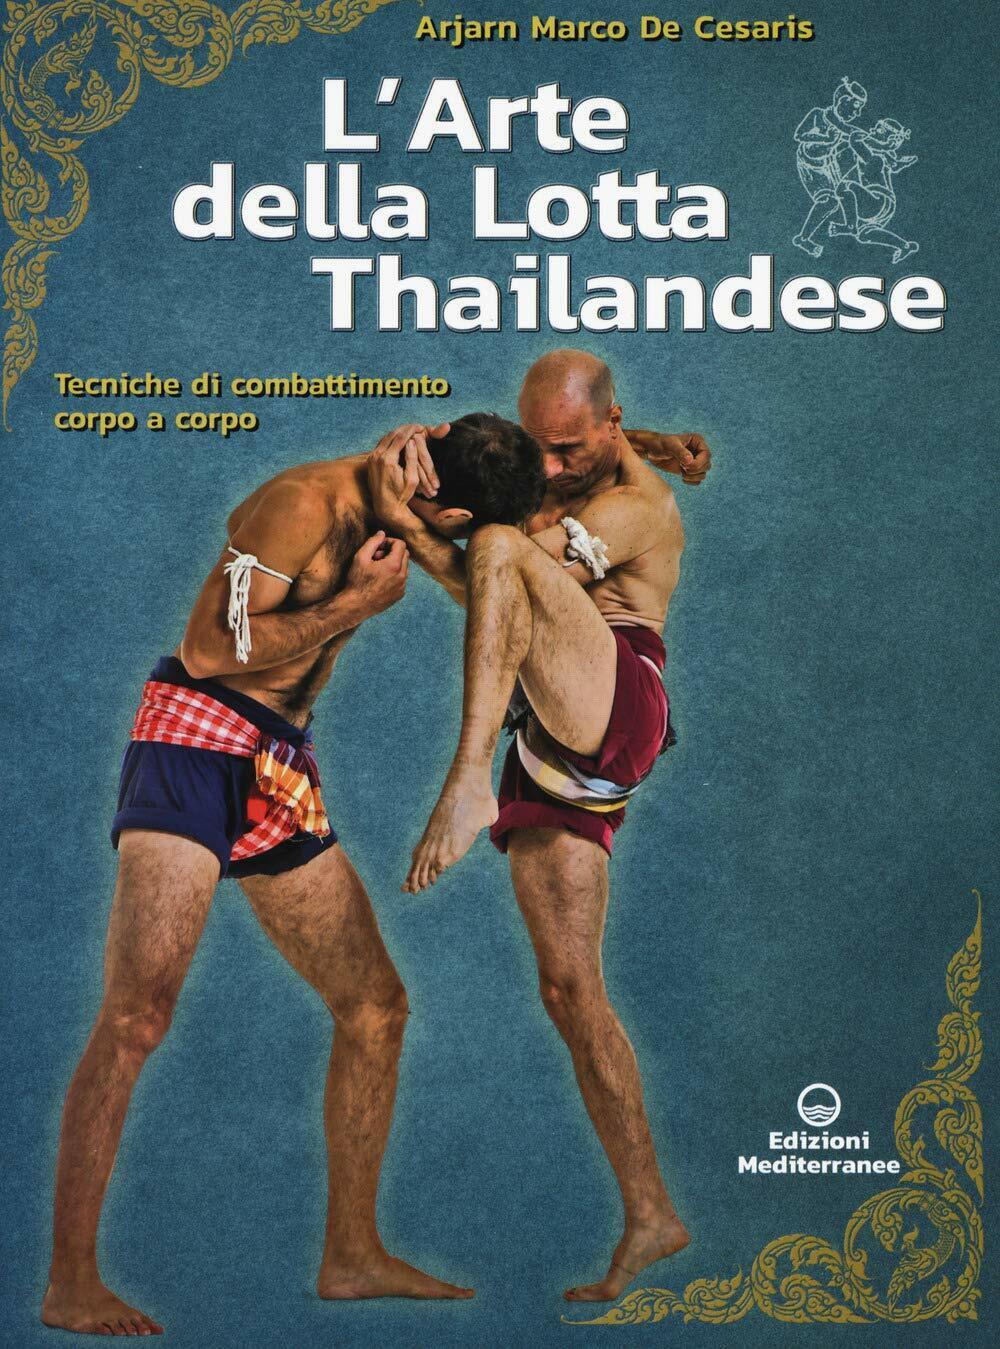 L'arte della lotta thailandese - Marco De Cesaris - Edizioni Mediterranee, 2020